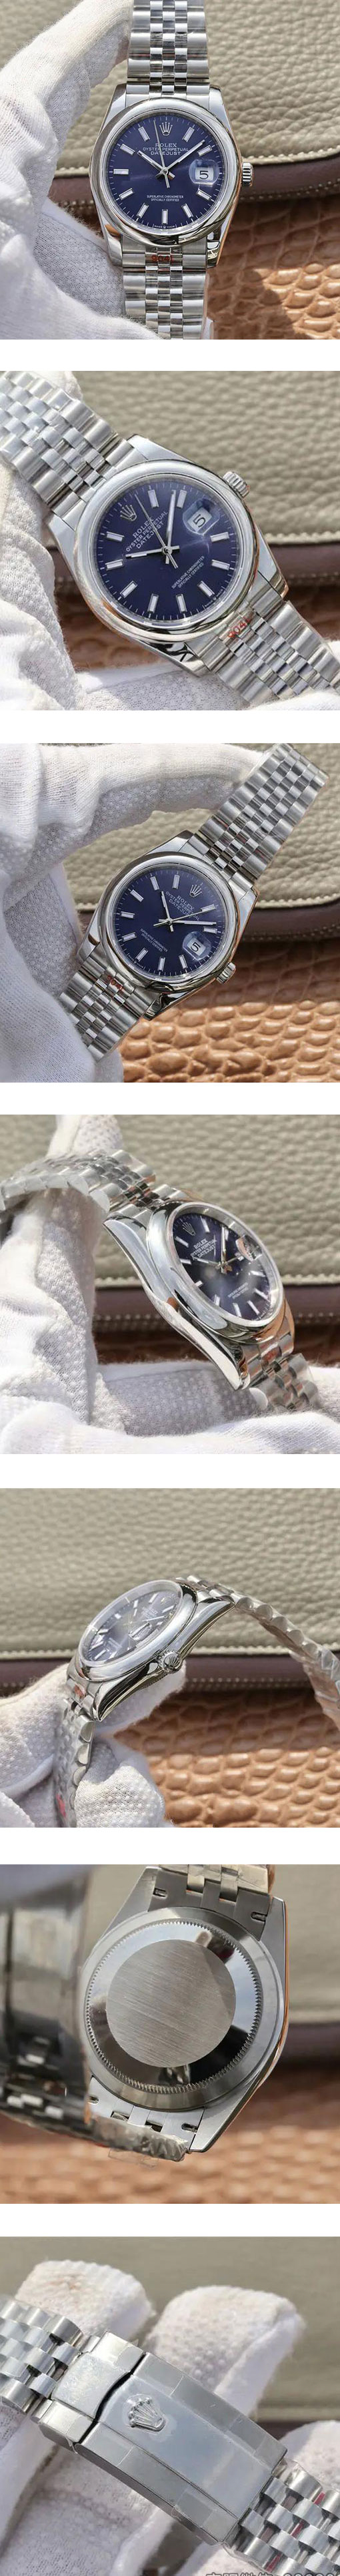 愛用腕時計 ROLEX情報 デイトジャストコピー時計 36mm オイスターブレスレット ブルー 126200-0005 Cal.3235搭載 自動巻き